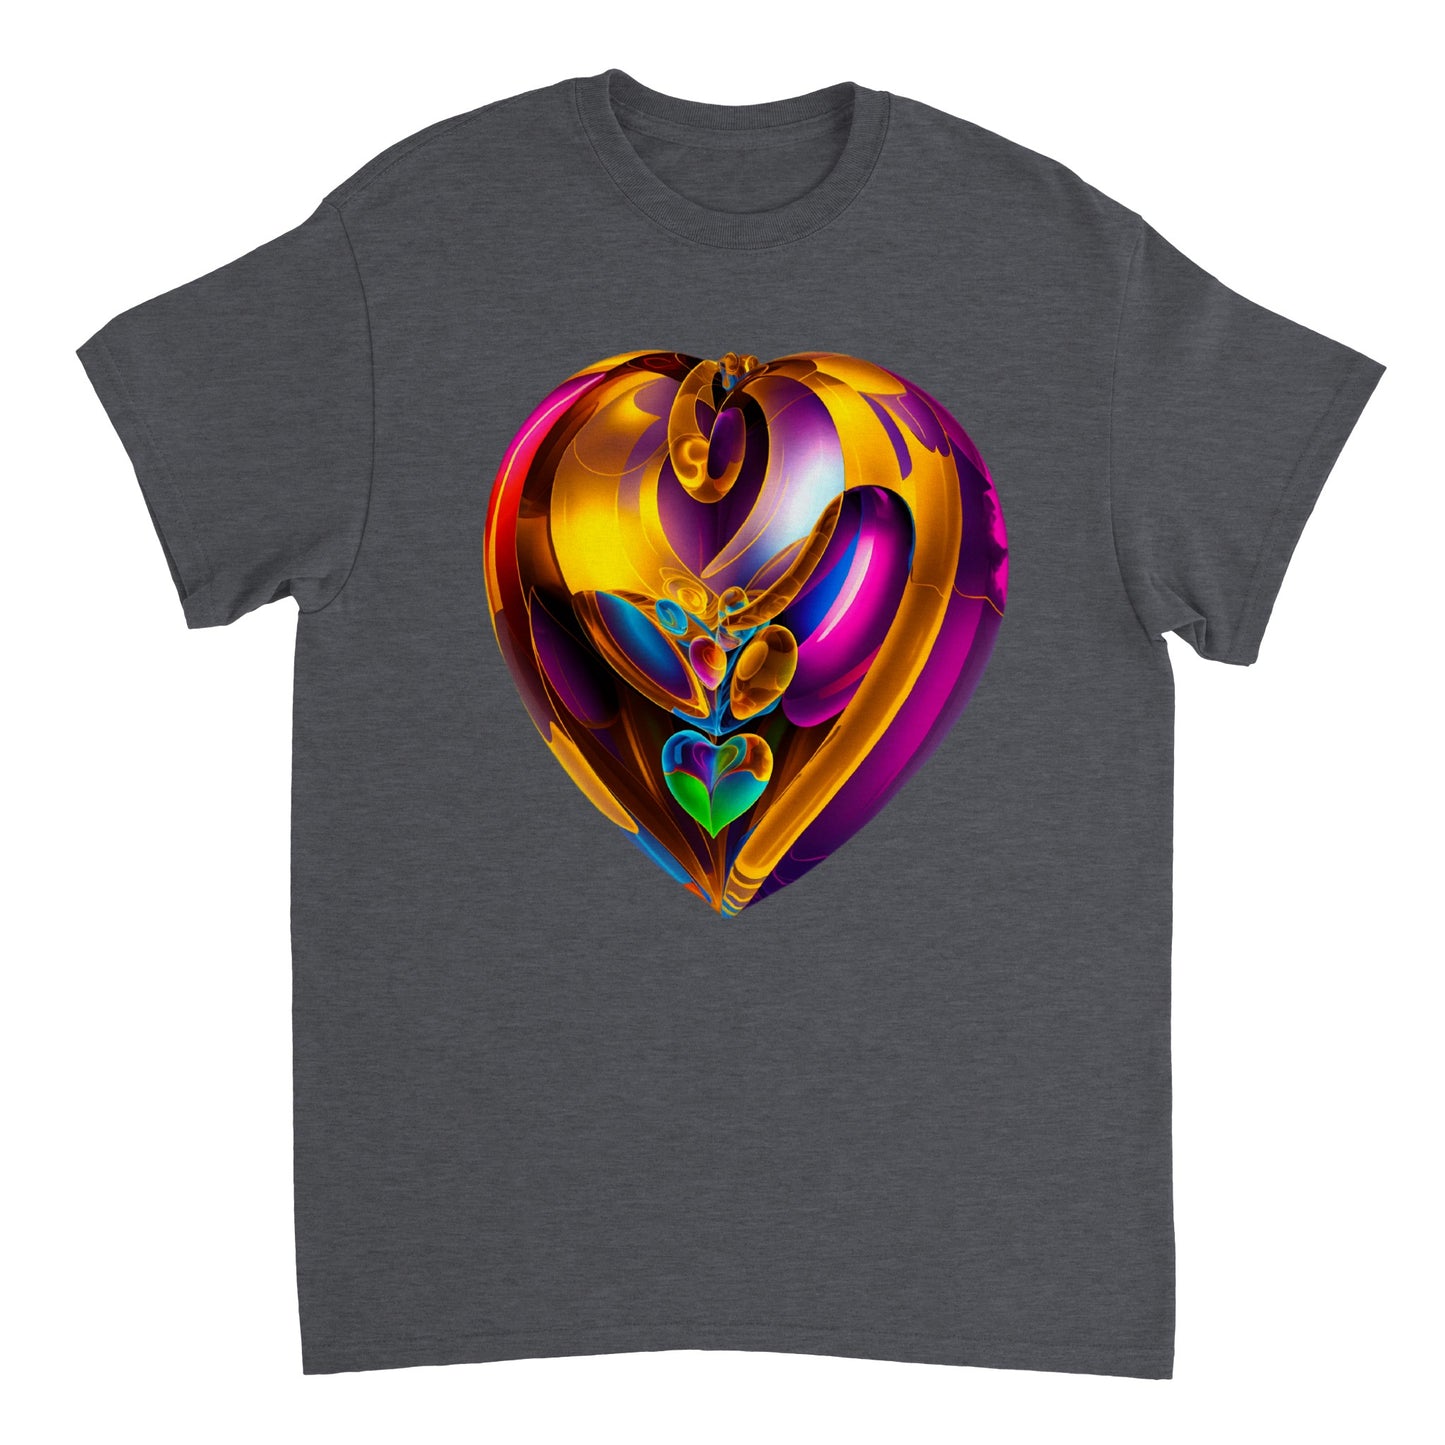 Love Heart - Heavyweight Unisex Crewneck T-shirt 44